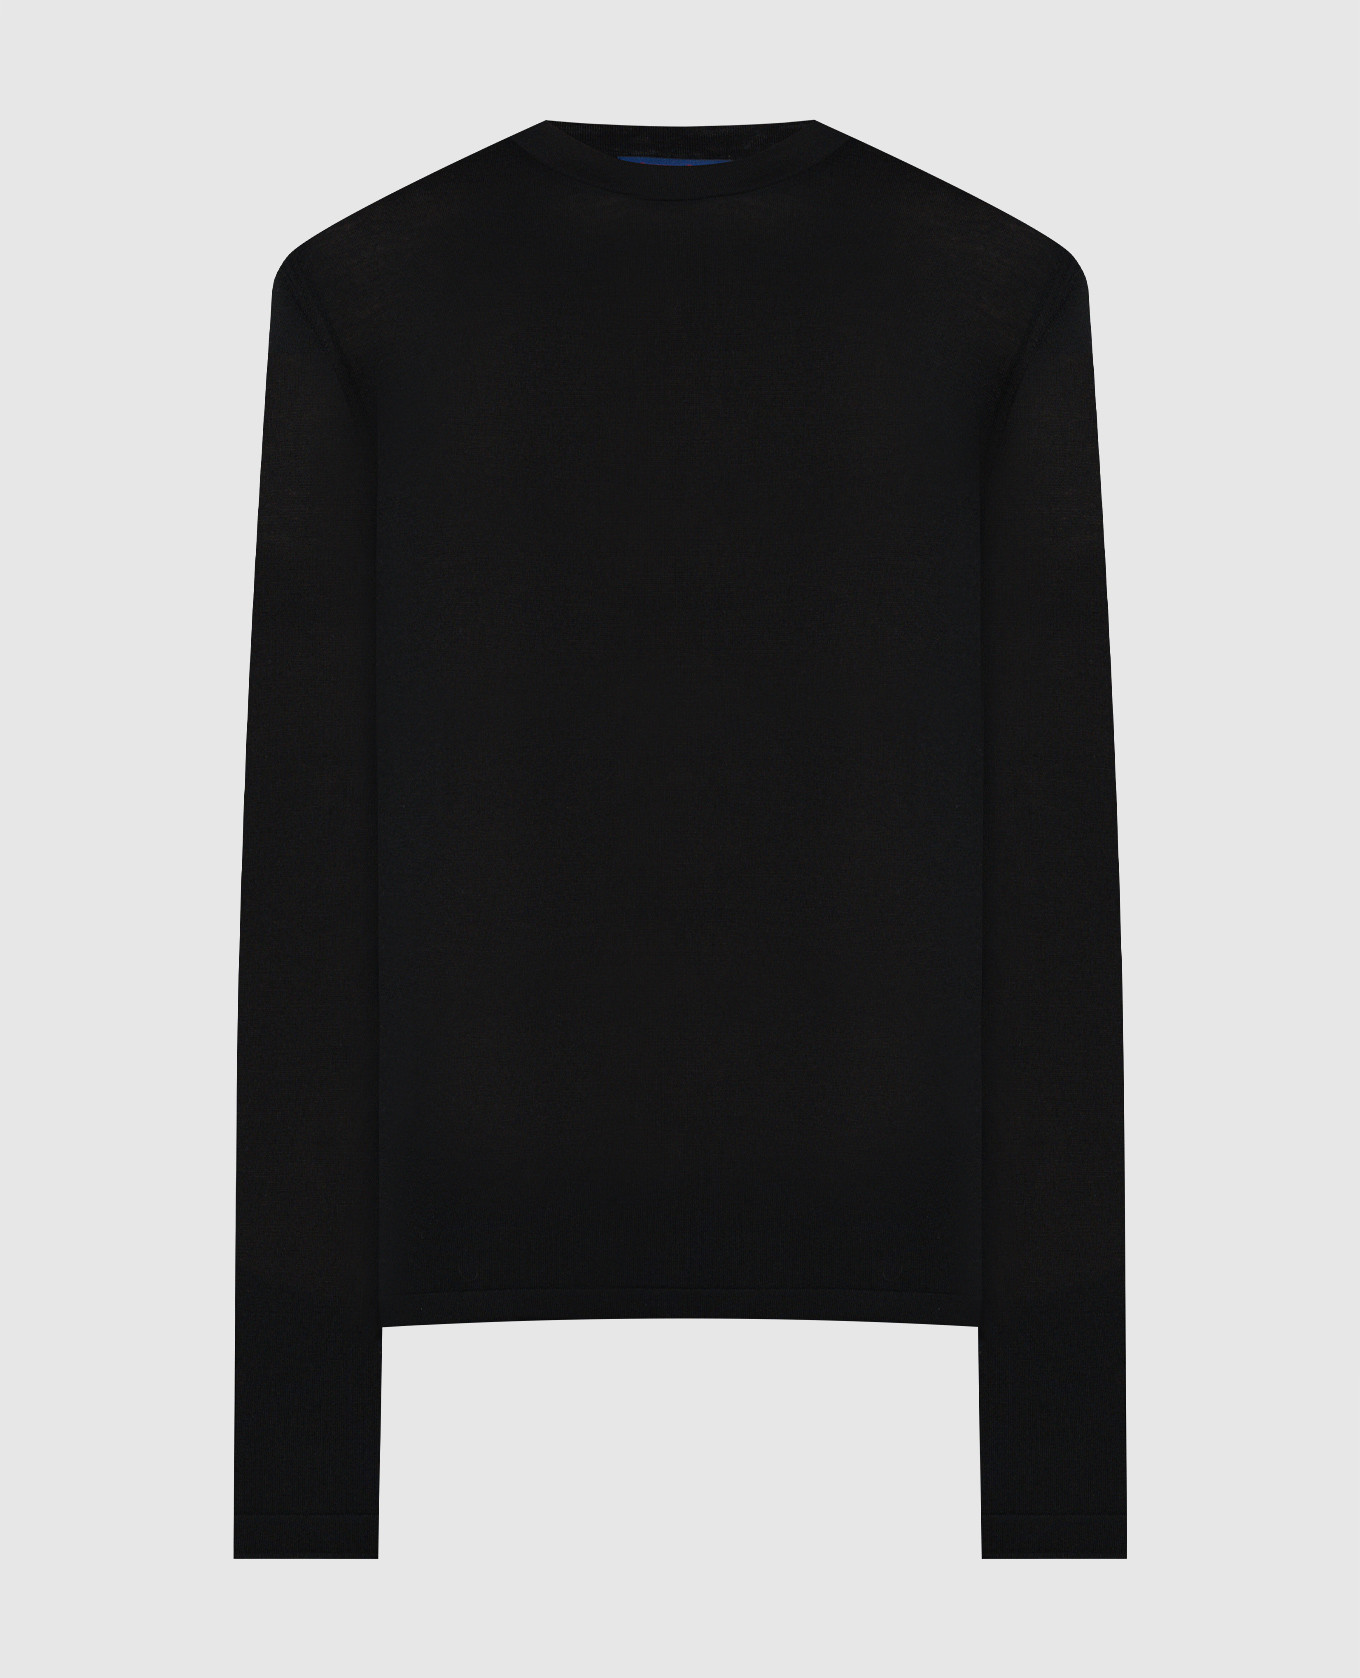 Black cashmere jumper